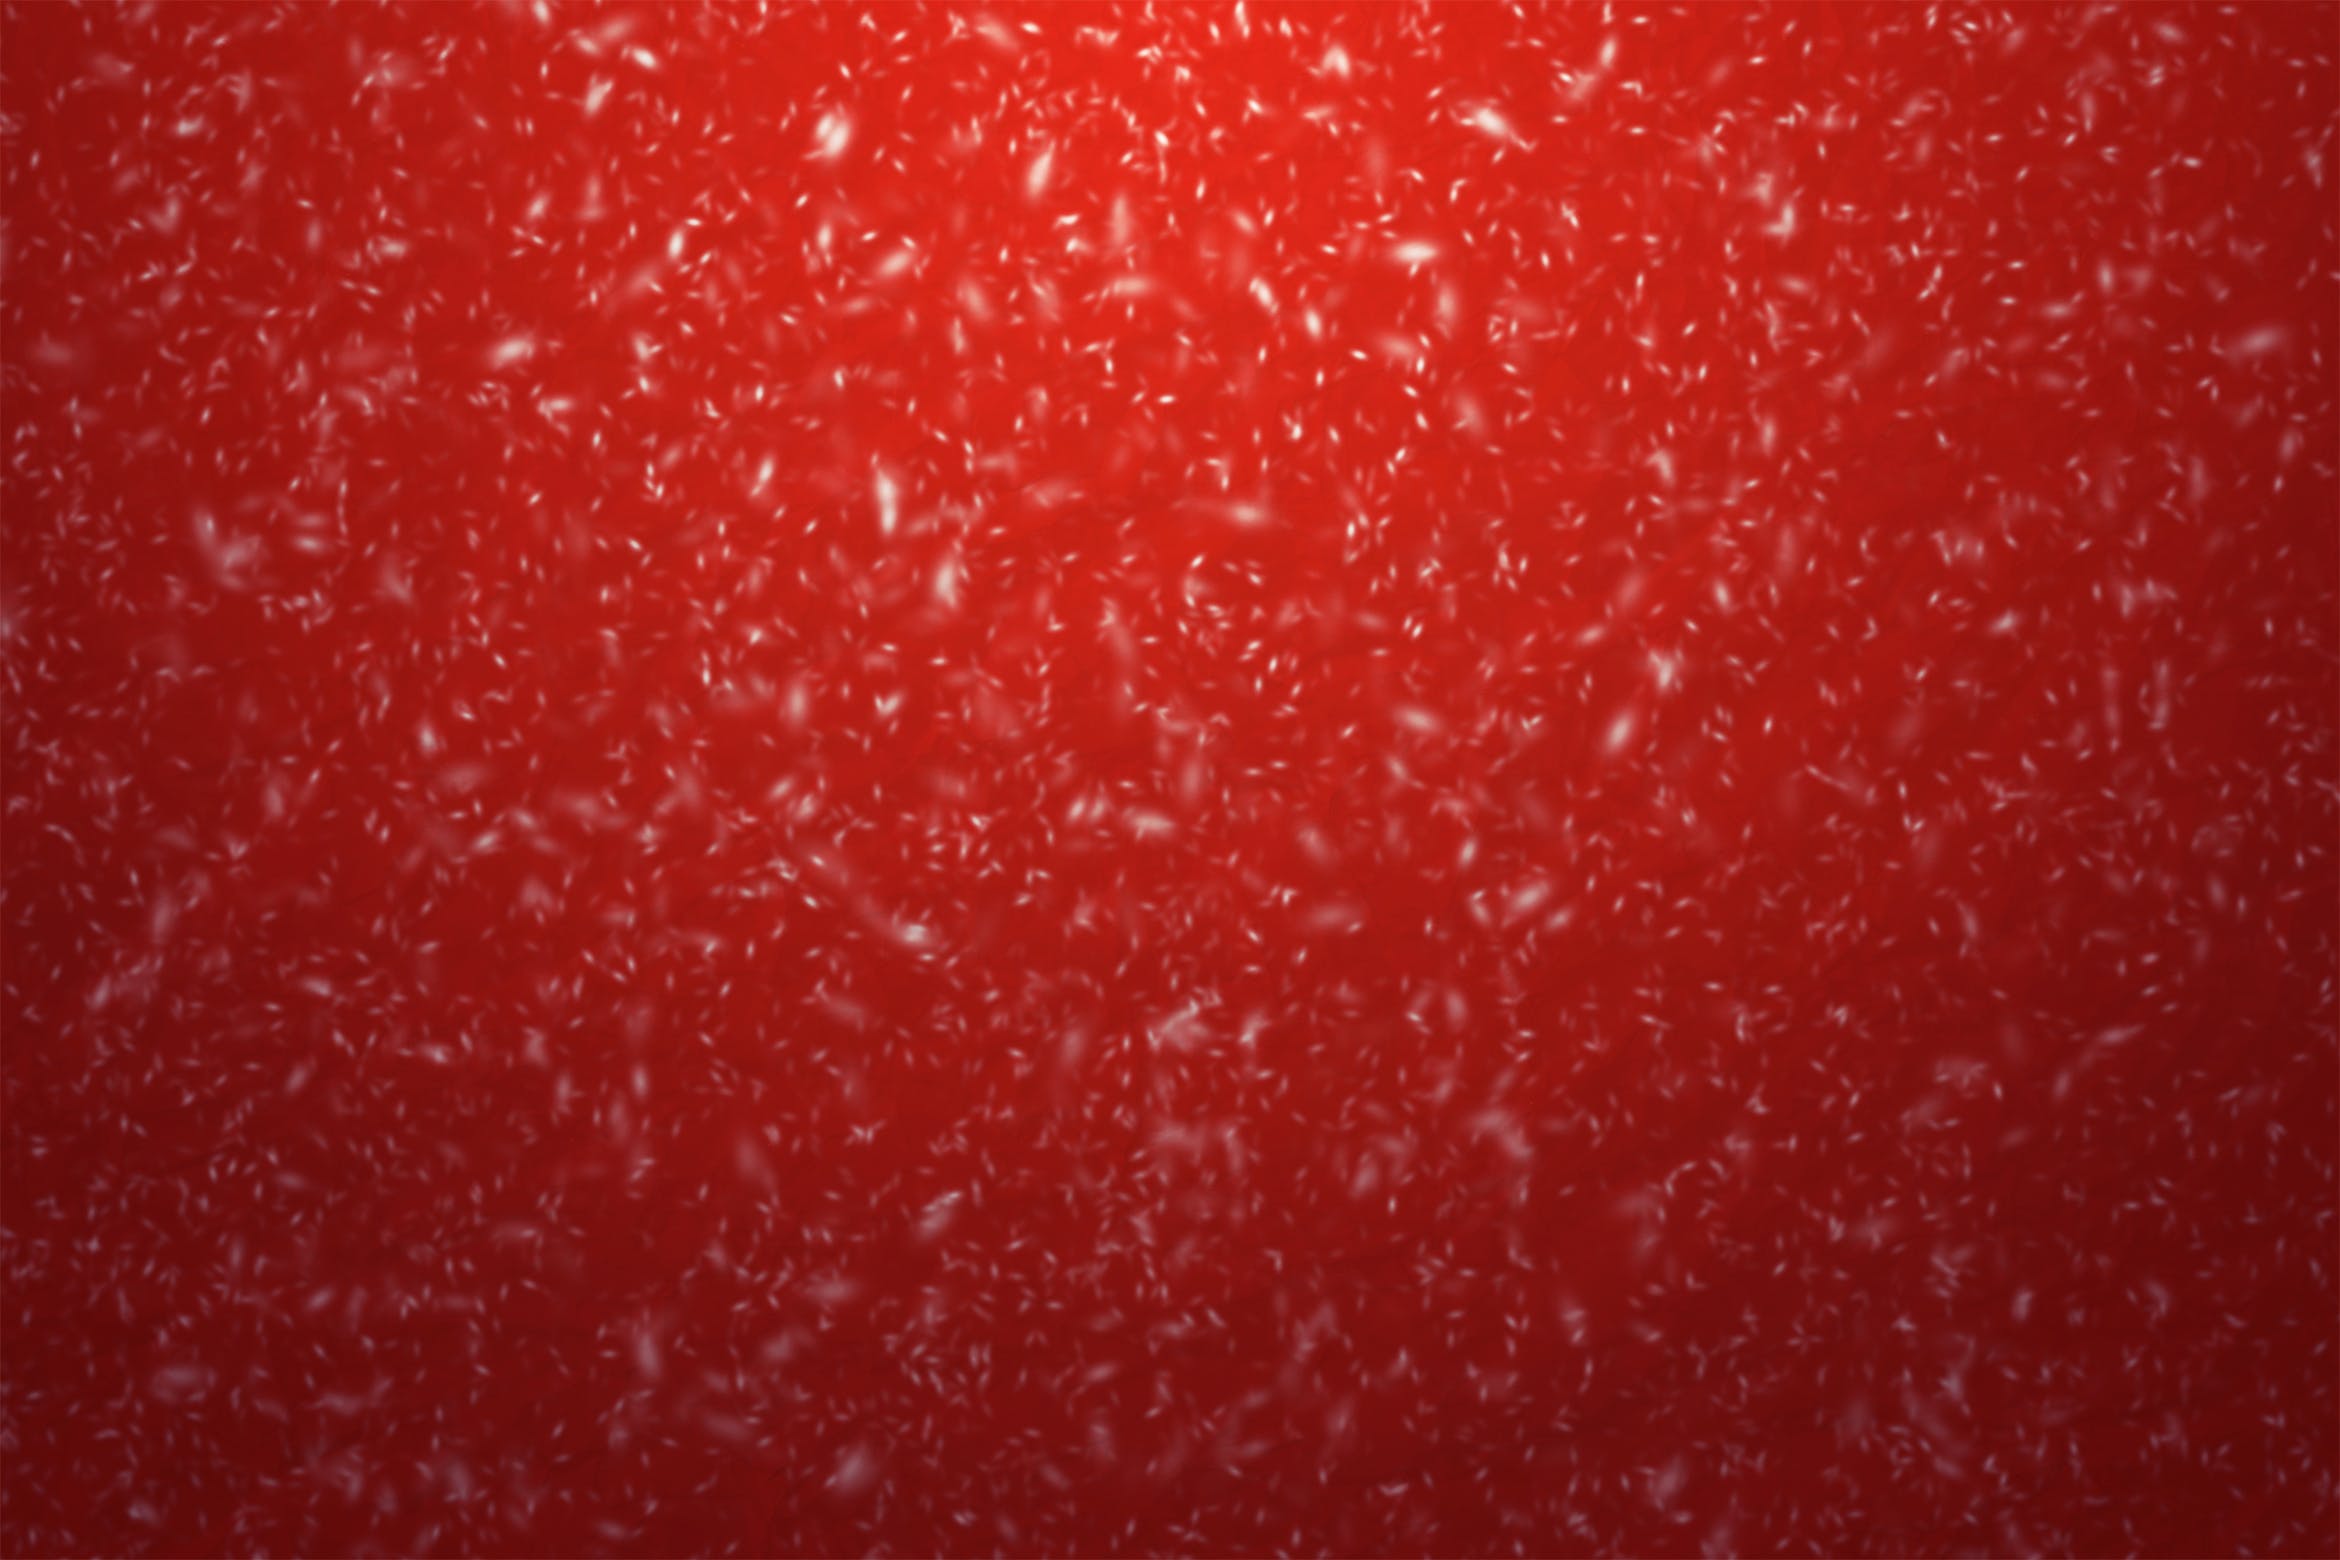 4张高分辨率圣诞节雪花纷飞背景图素材 Snowy christmas background插图